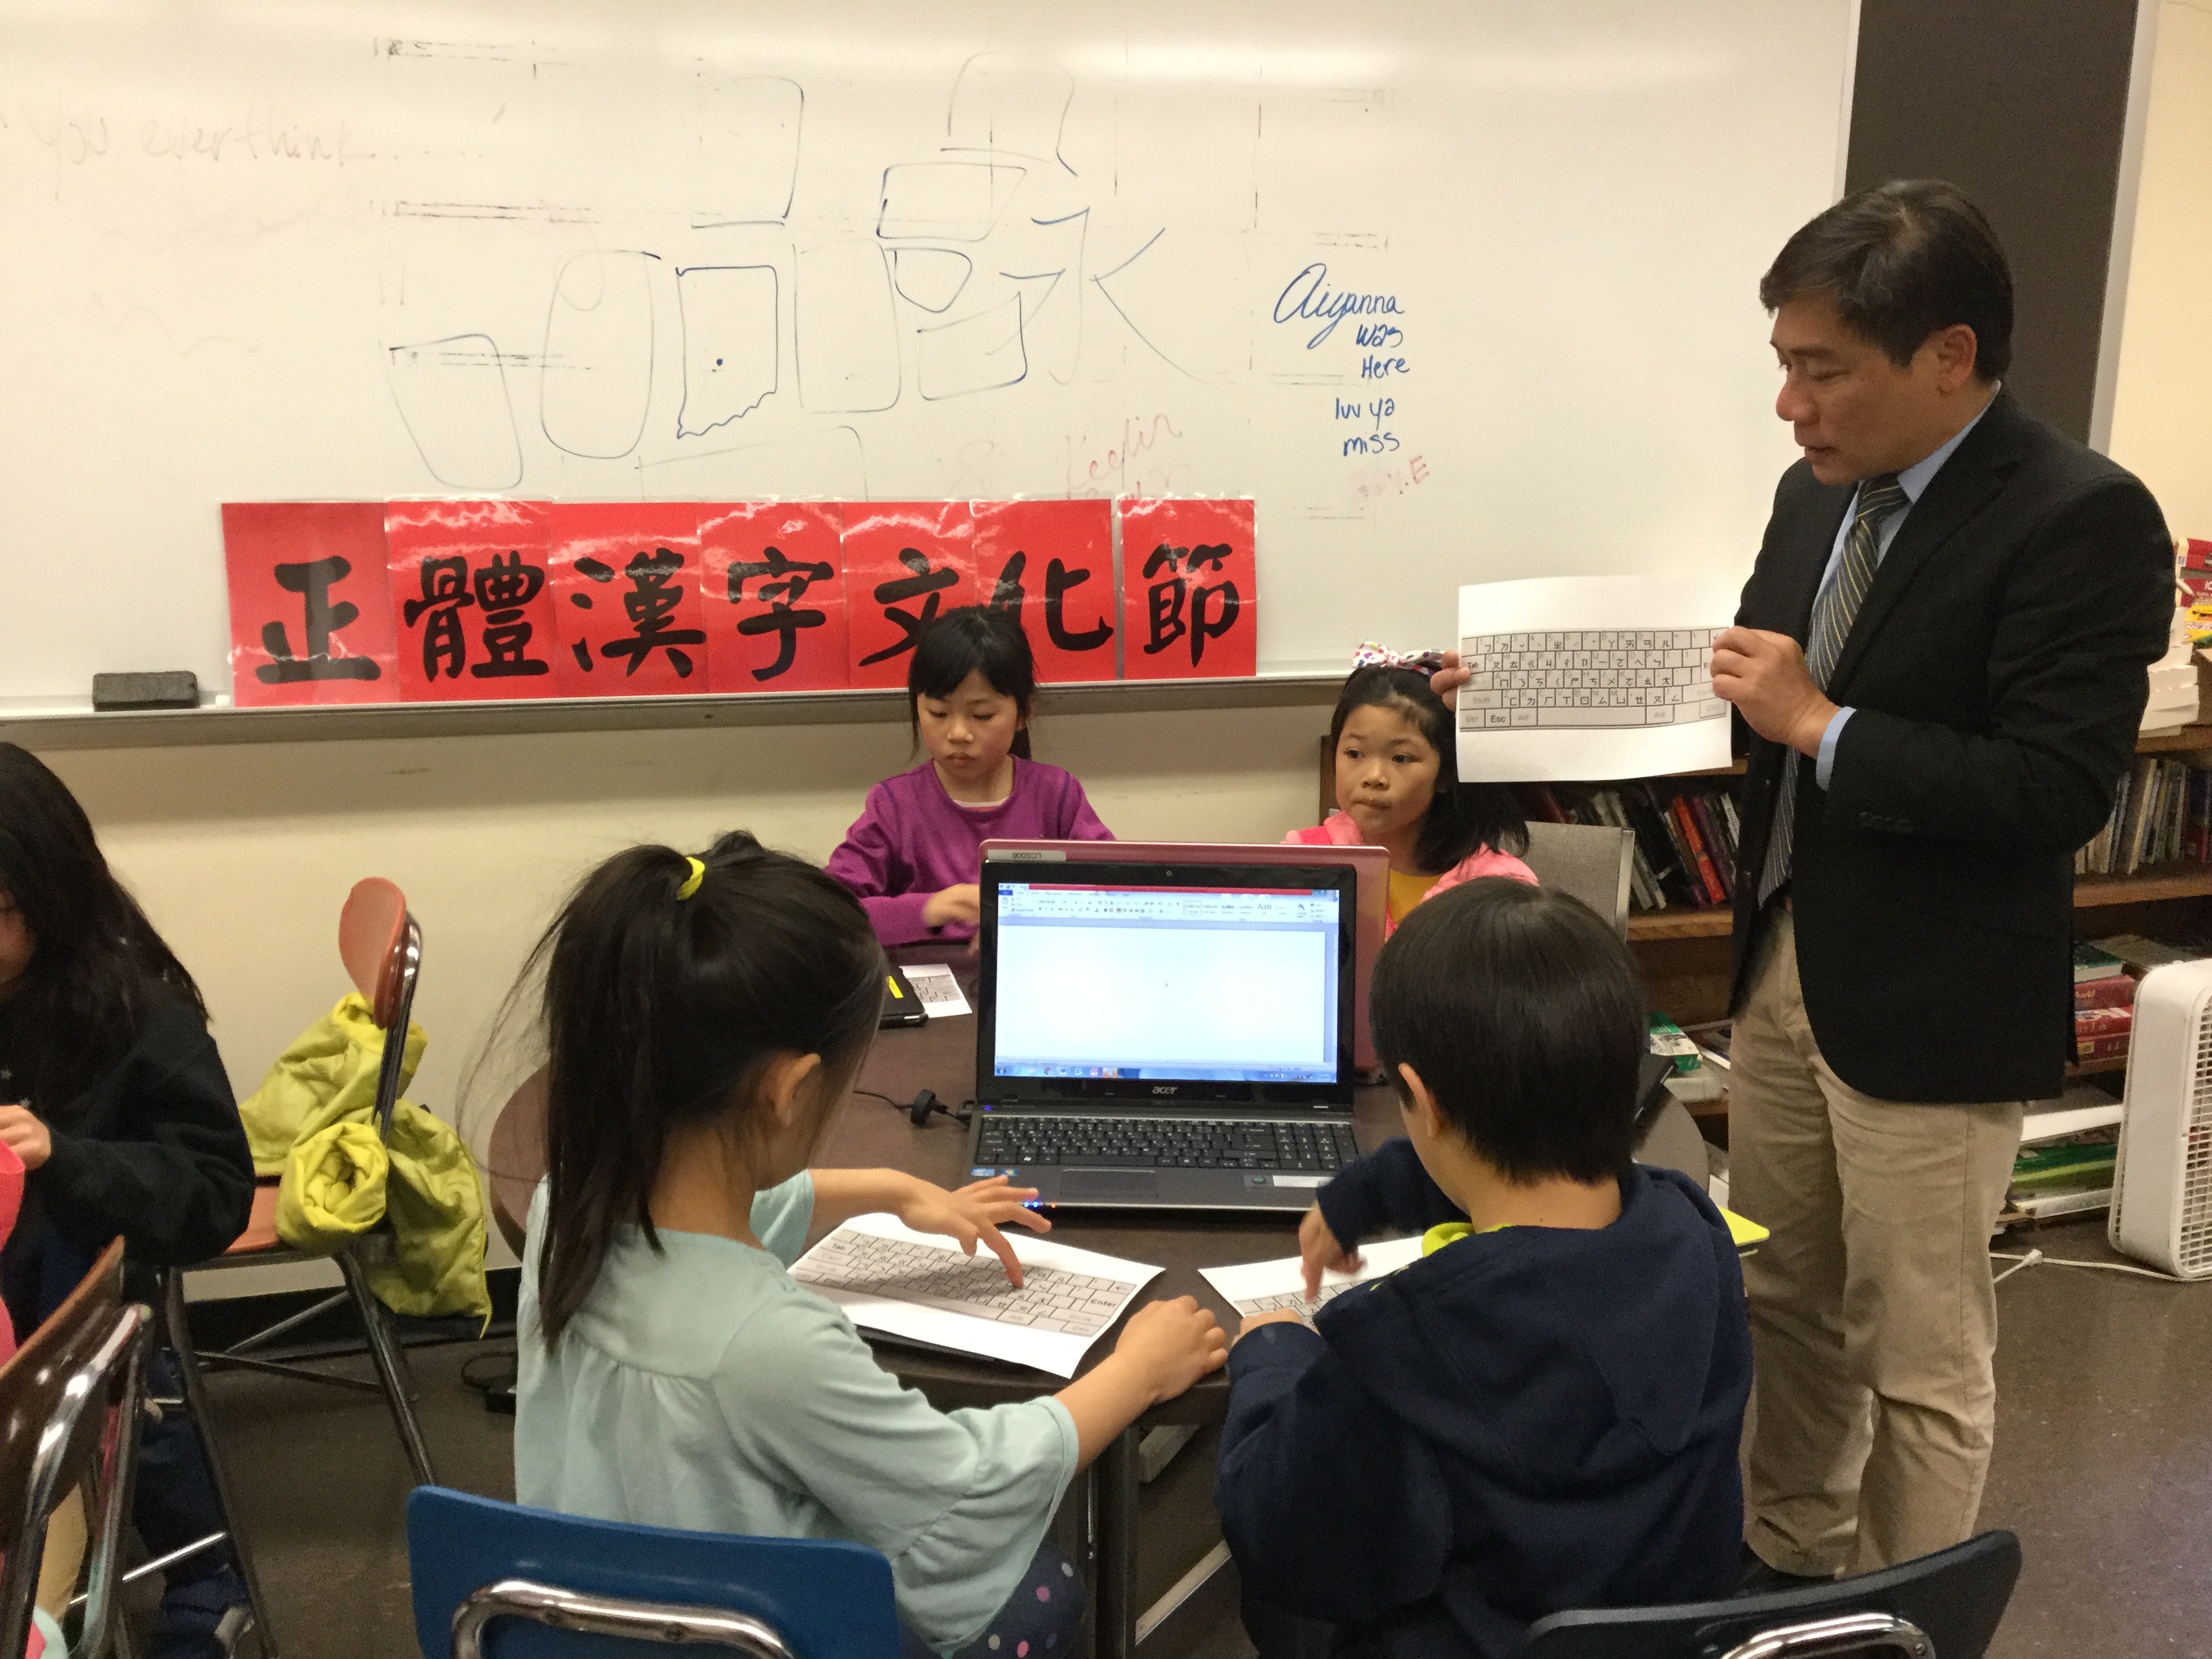 二年級班小朋友正聚精會神地上中文打字課, 僑教中心主任歐宏偉親臨指導並給同學加油.